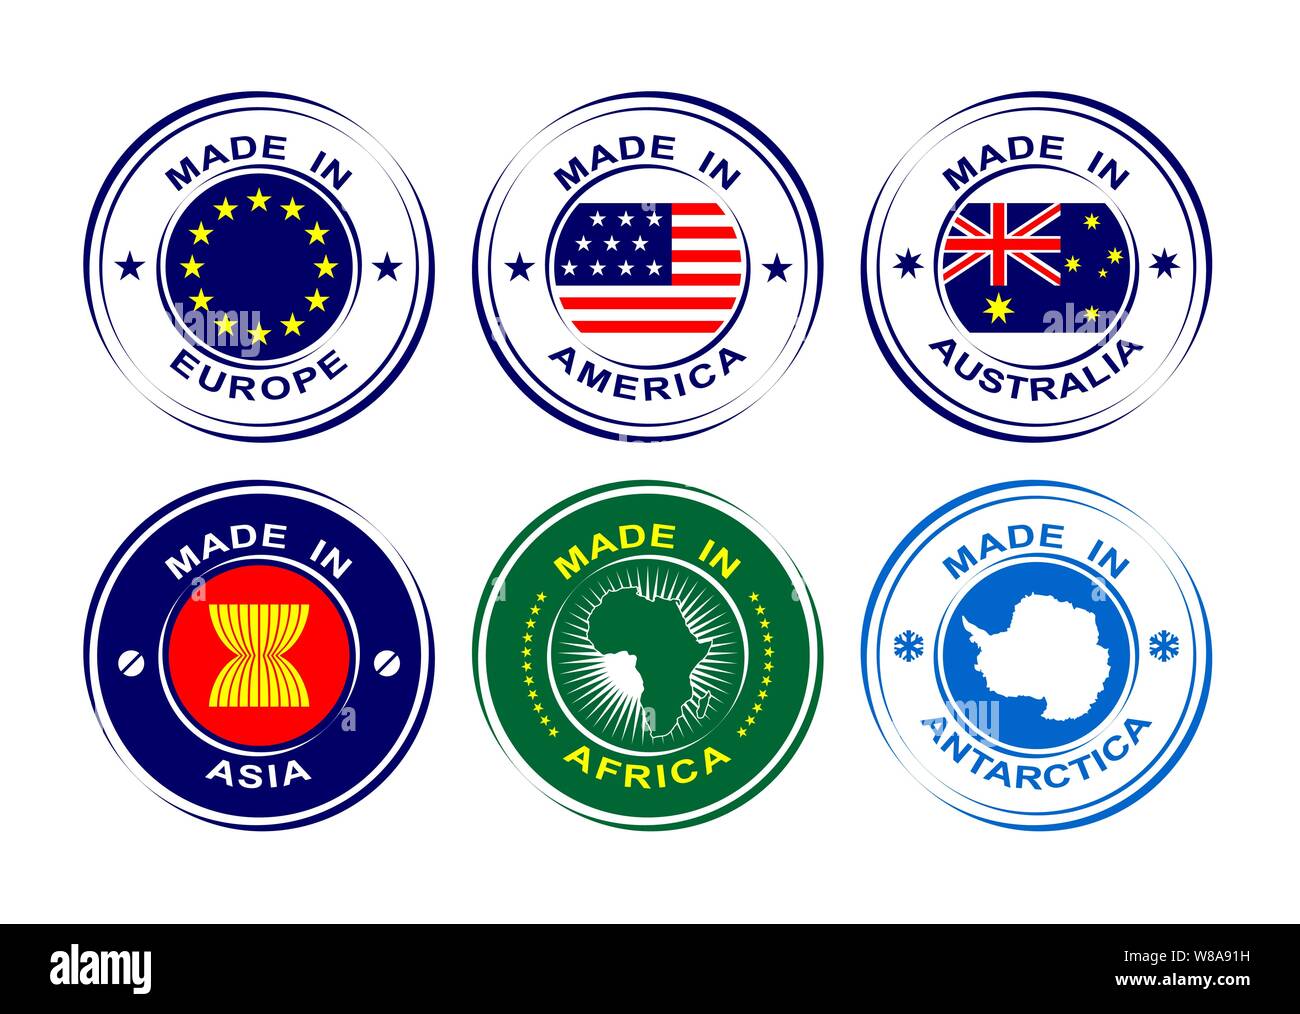 Sammlung von Runde Etiketten Hergestellt in Europa, Amerika, Afrika, Australien, Asien, Antarktis mit Flaggen Stock Vektor